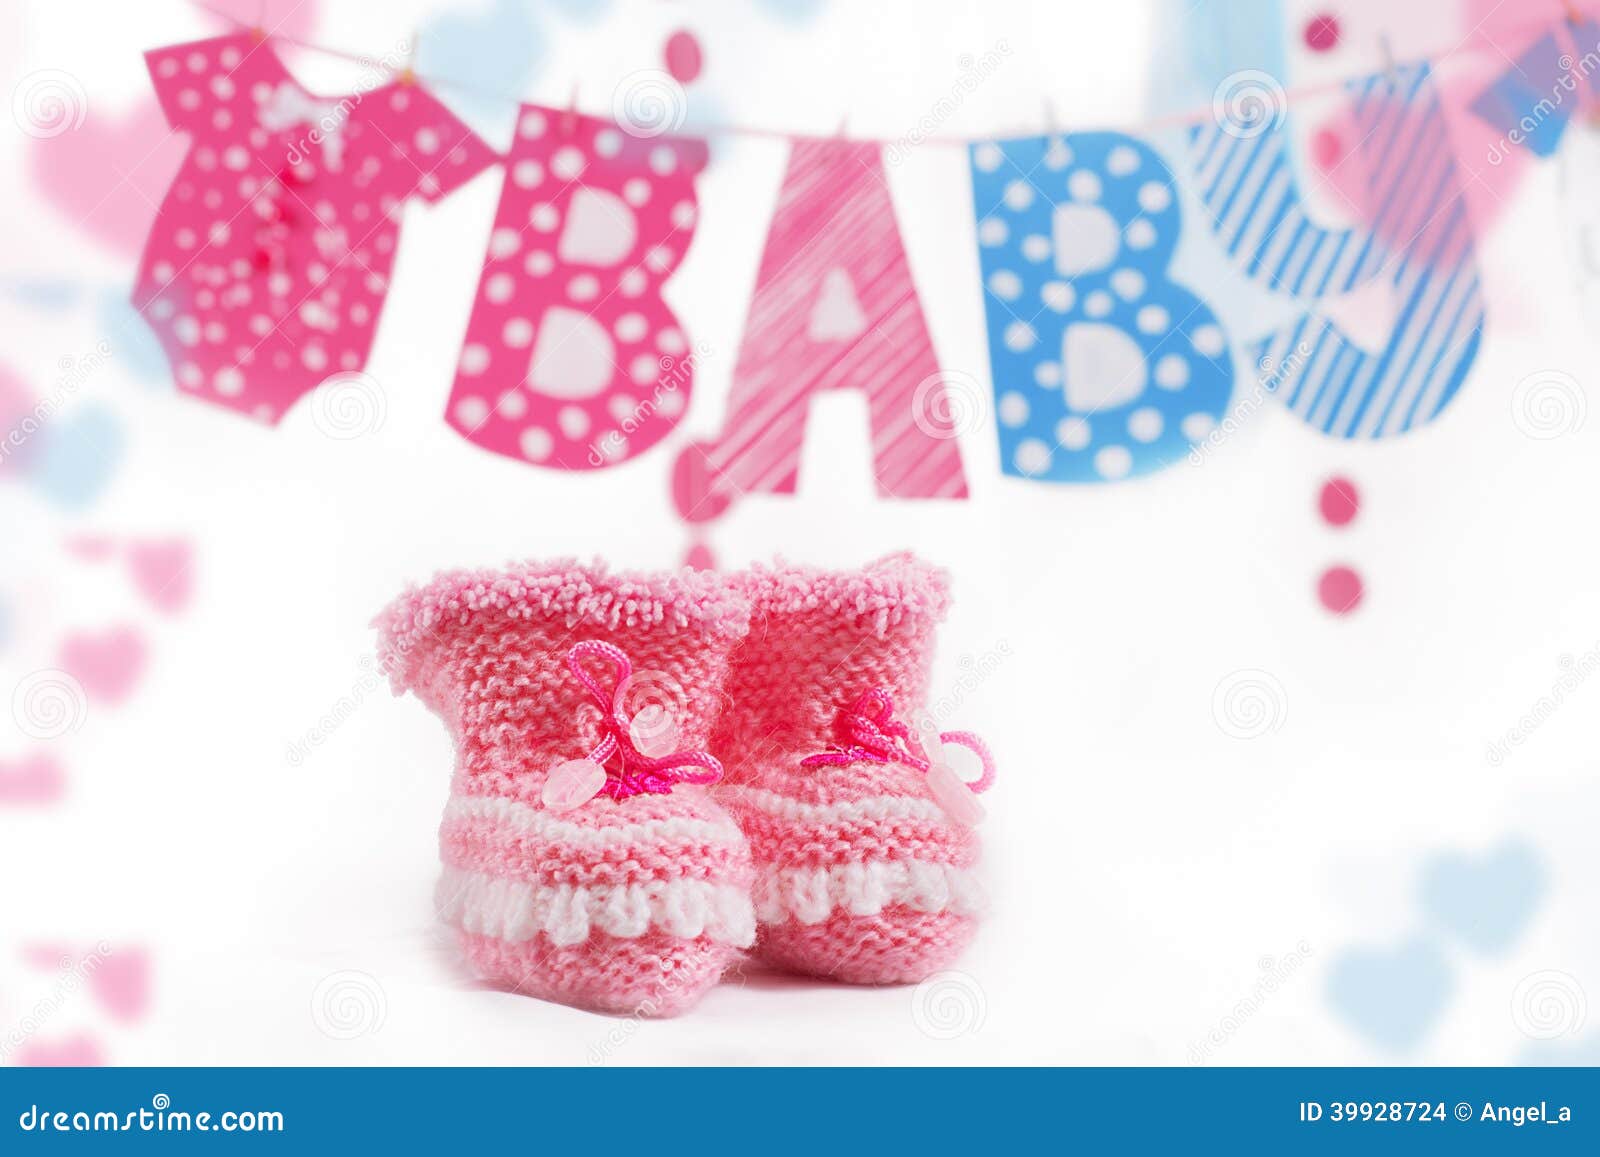 imagens de sapatinhos de bebe rosa e azul